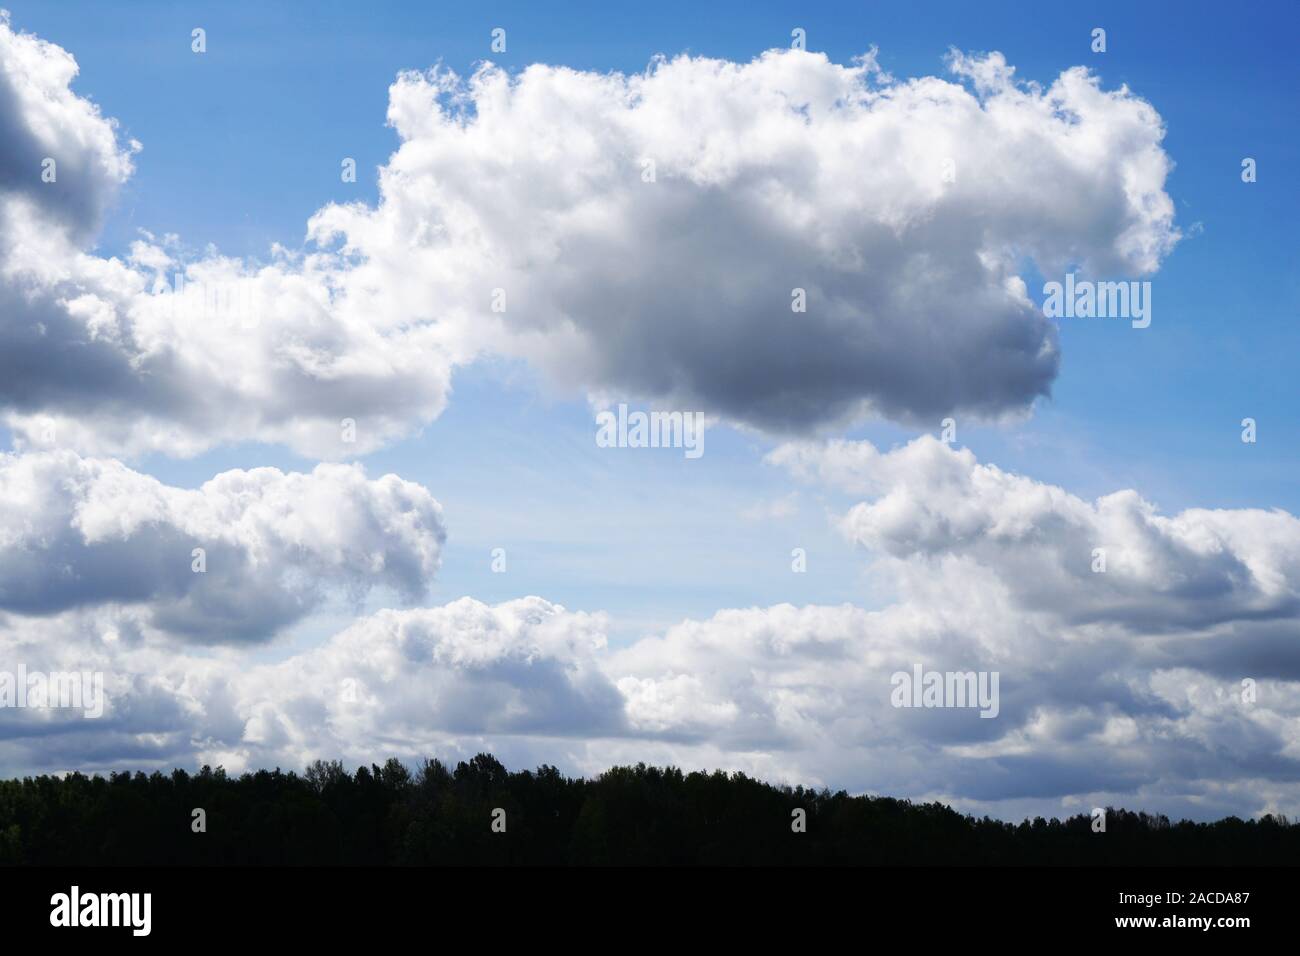 Himmel mit dramatischen Wolken über baumkronen - Natur Hintergrund mit Kopie Raum Stockfoto